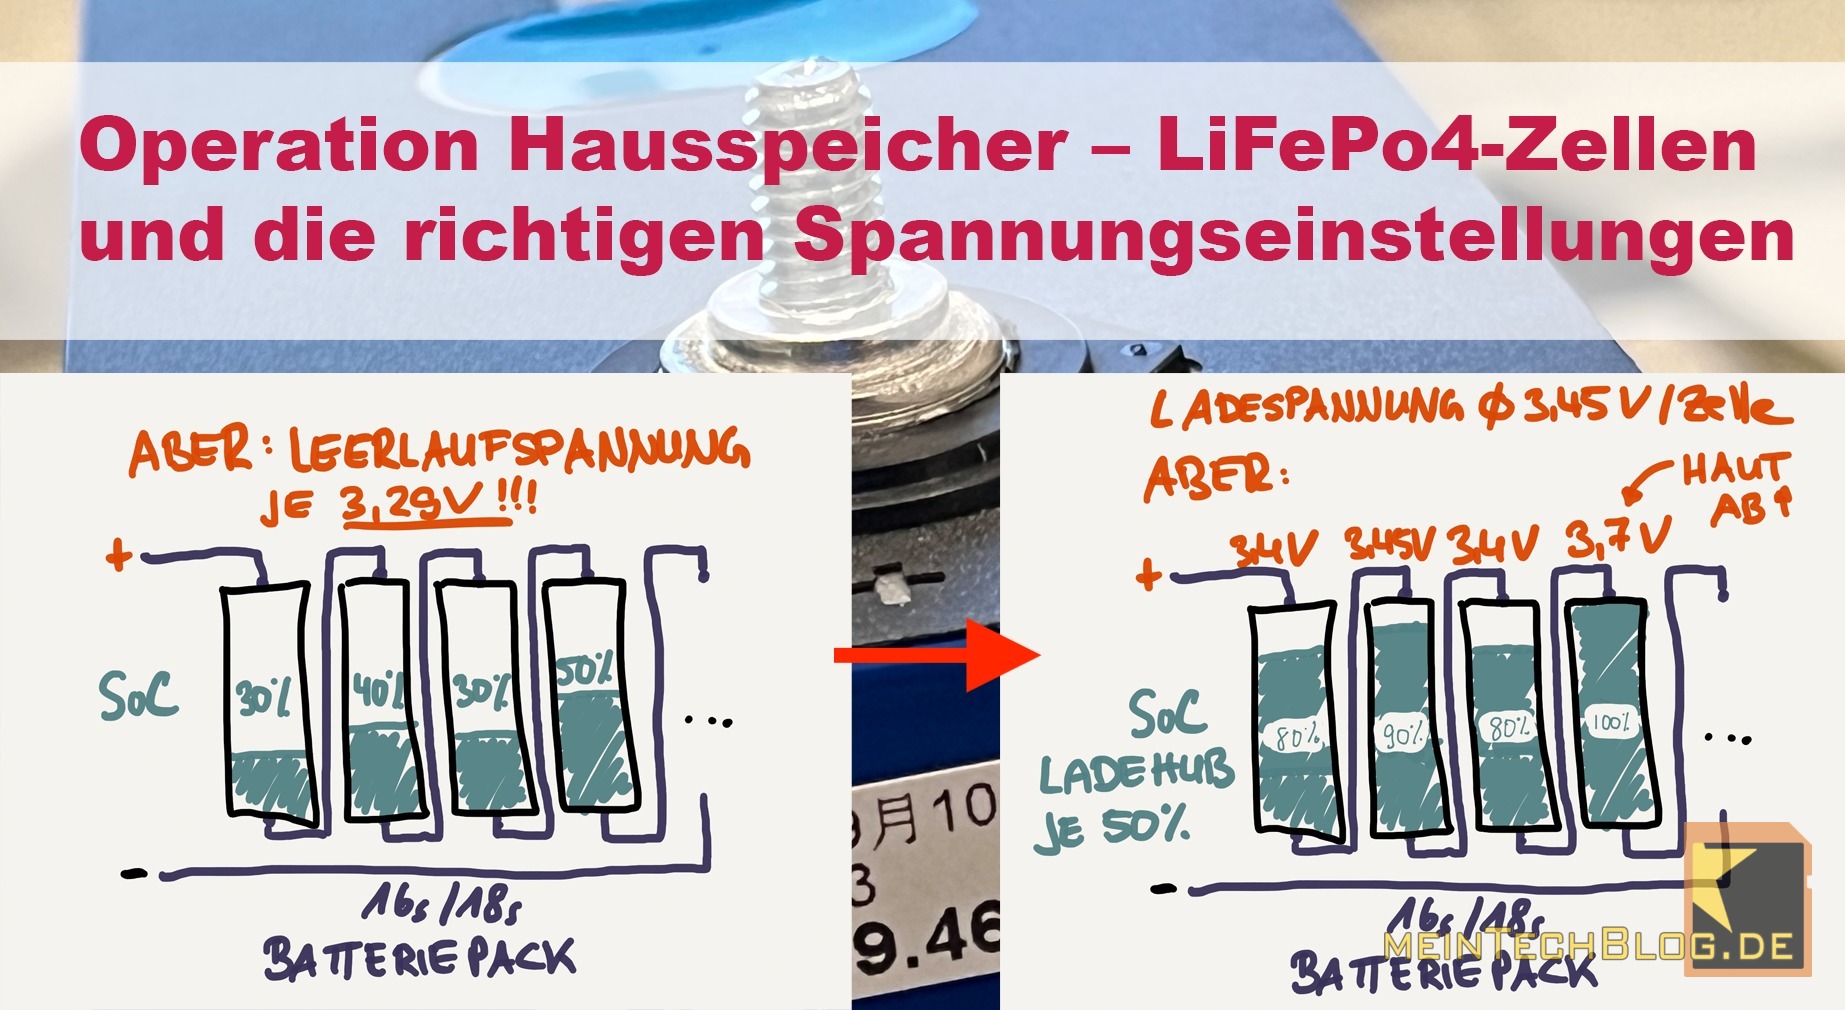 https://meintechblog.de/wp-content/uploads/2022/12/Operation-Hausspeicher-%E2%80%93-LiFePo4-Zellen-und-die-richtigen-Spannungseinstellungen.jpg